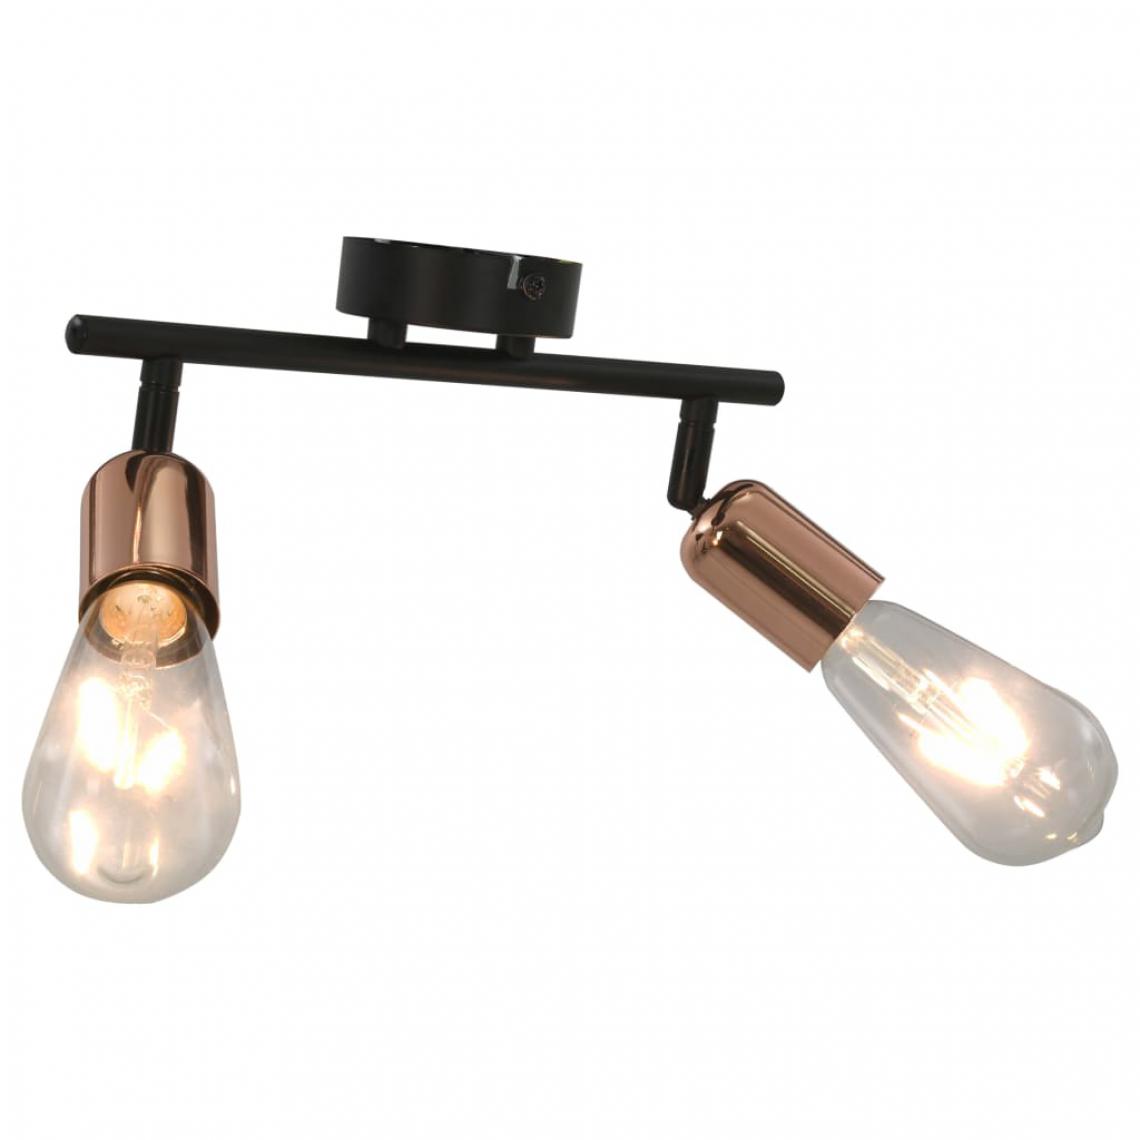 Icaverne - Splendide Luminaires categorie N’Djaména Projecteur à 2 voies avec ampoules à filament 2W Noir et cuivre - Accessoires